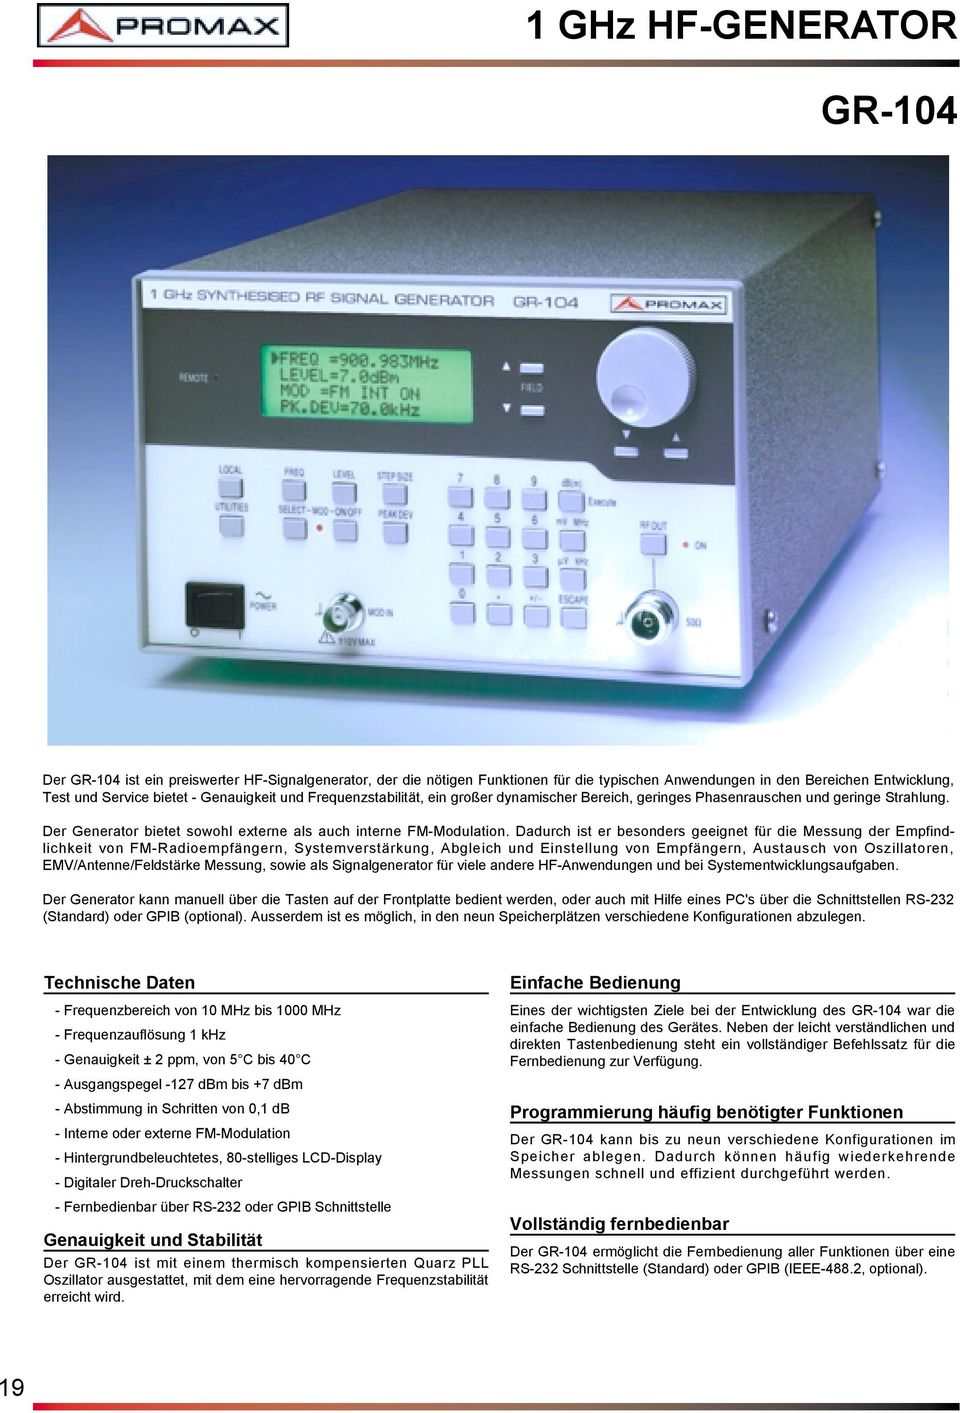 Dadurch ist er besonders geeignet für die Messung der Empfindlichkeit von FM-Radioempfängern, Systemverstärkung, Abgleich und Einstellung von Empfängern, Austausch von Oszillatoren,